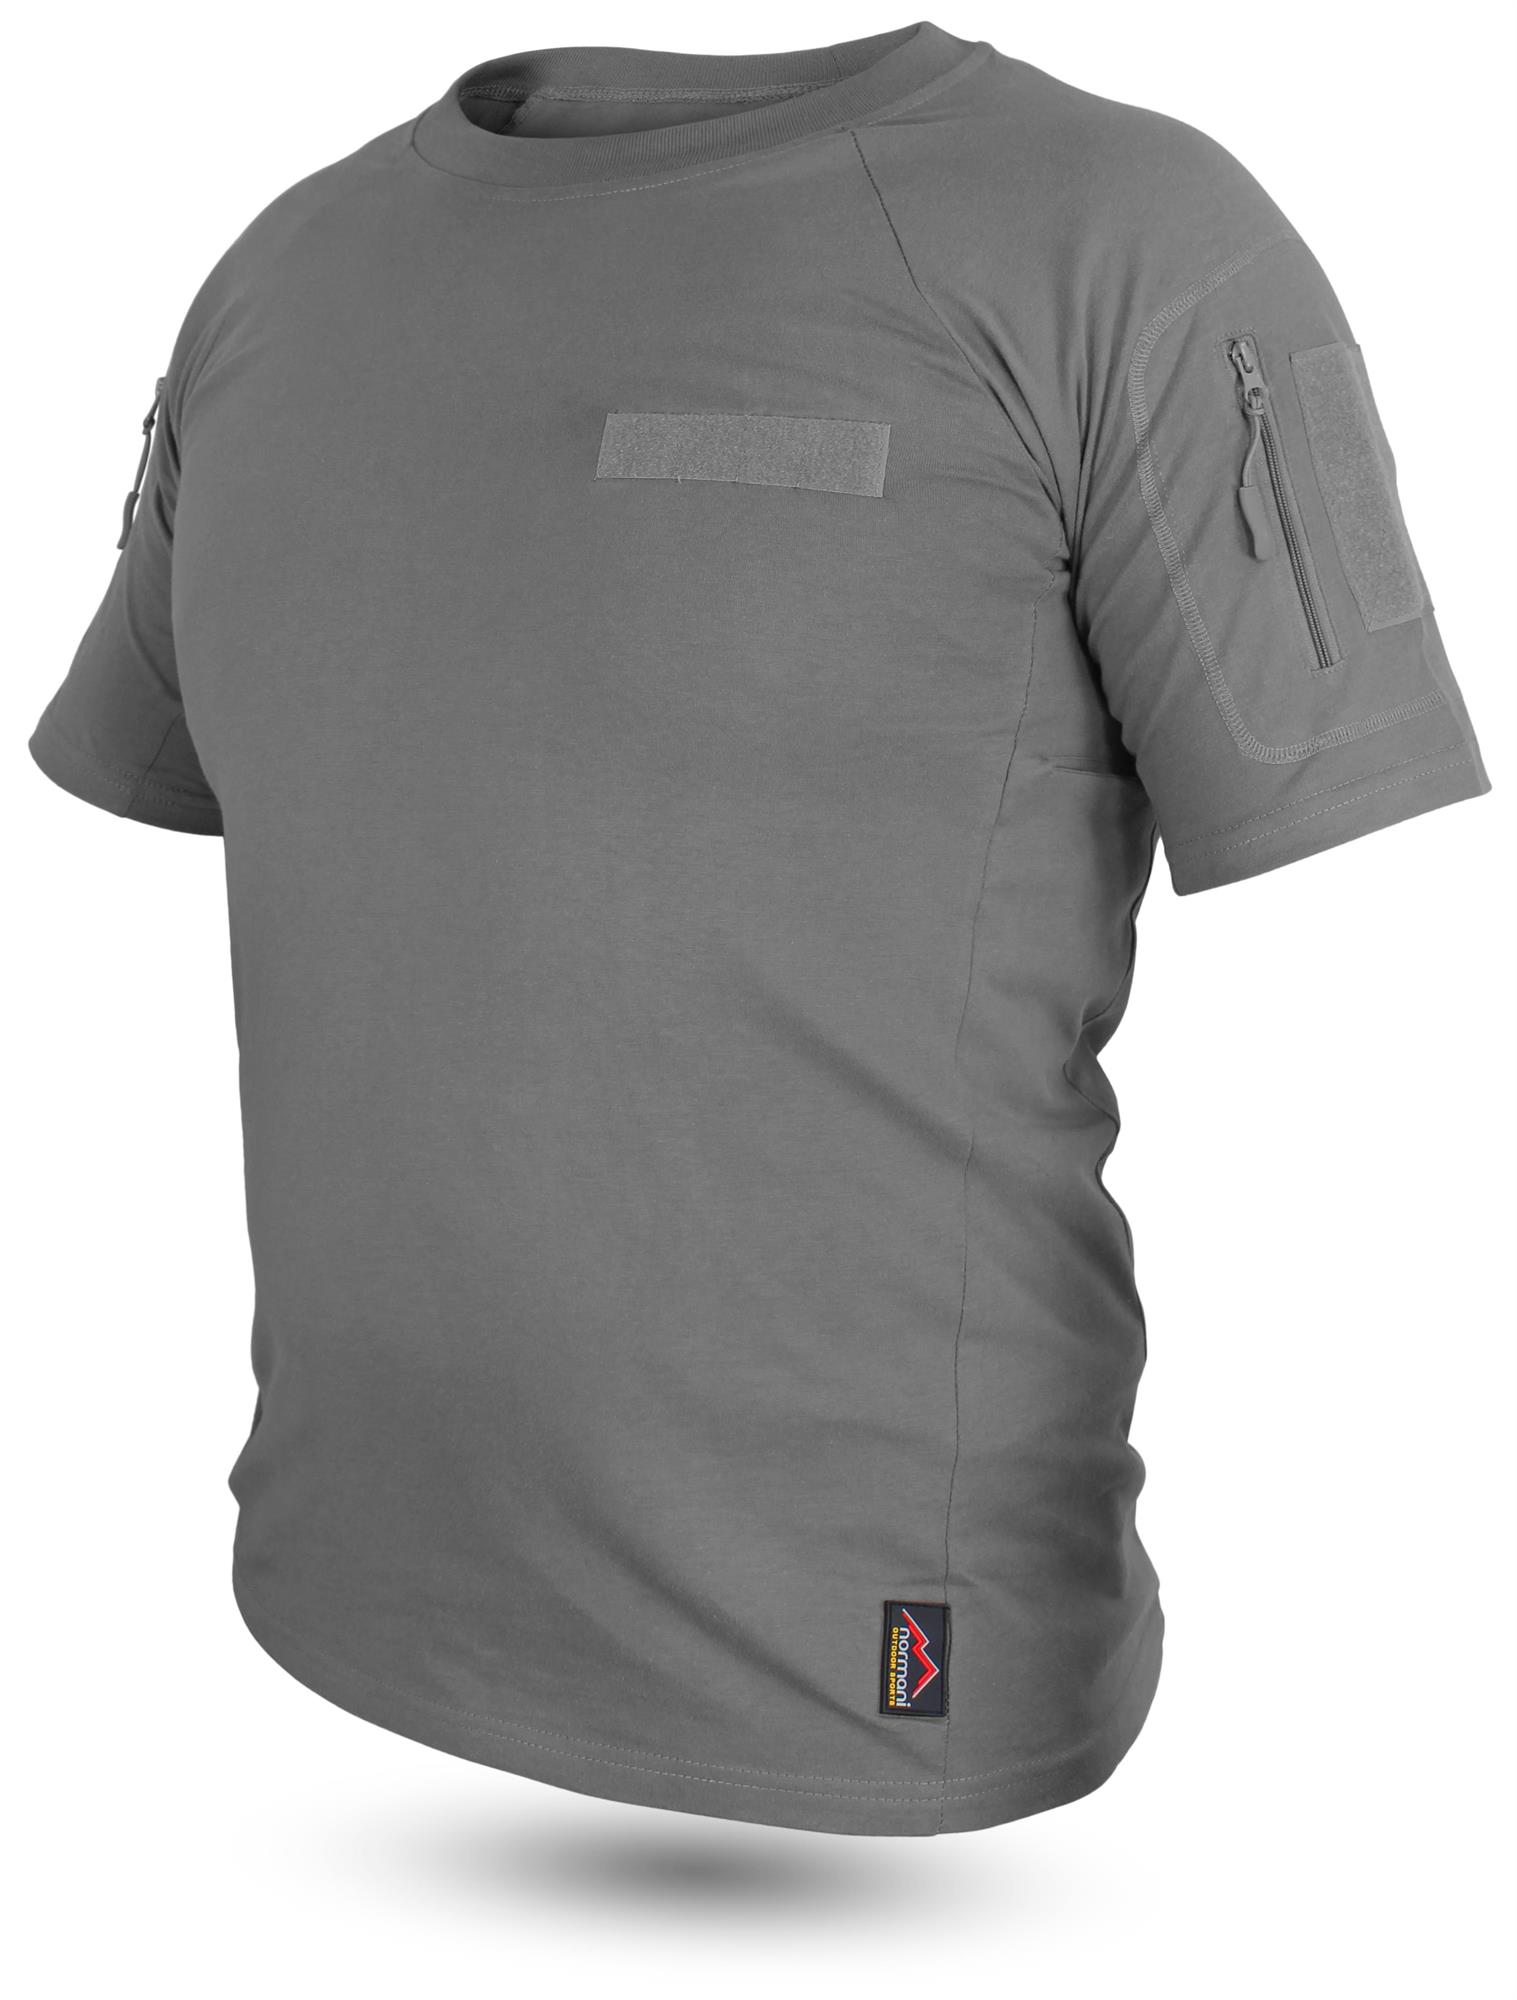 Herren Camo Army T-Shirt Tarnshirt Kurzarm Rundhals Tactical Military Bluse Top 